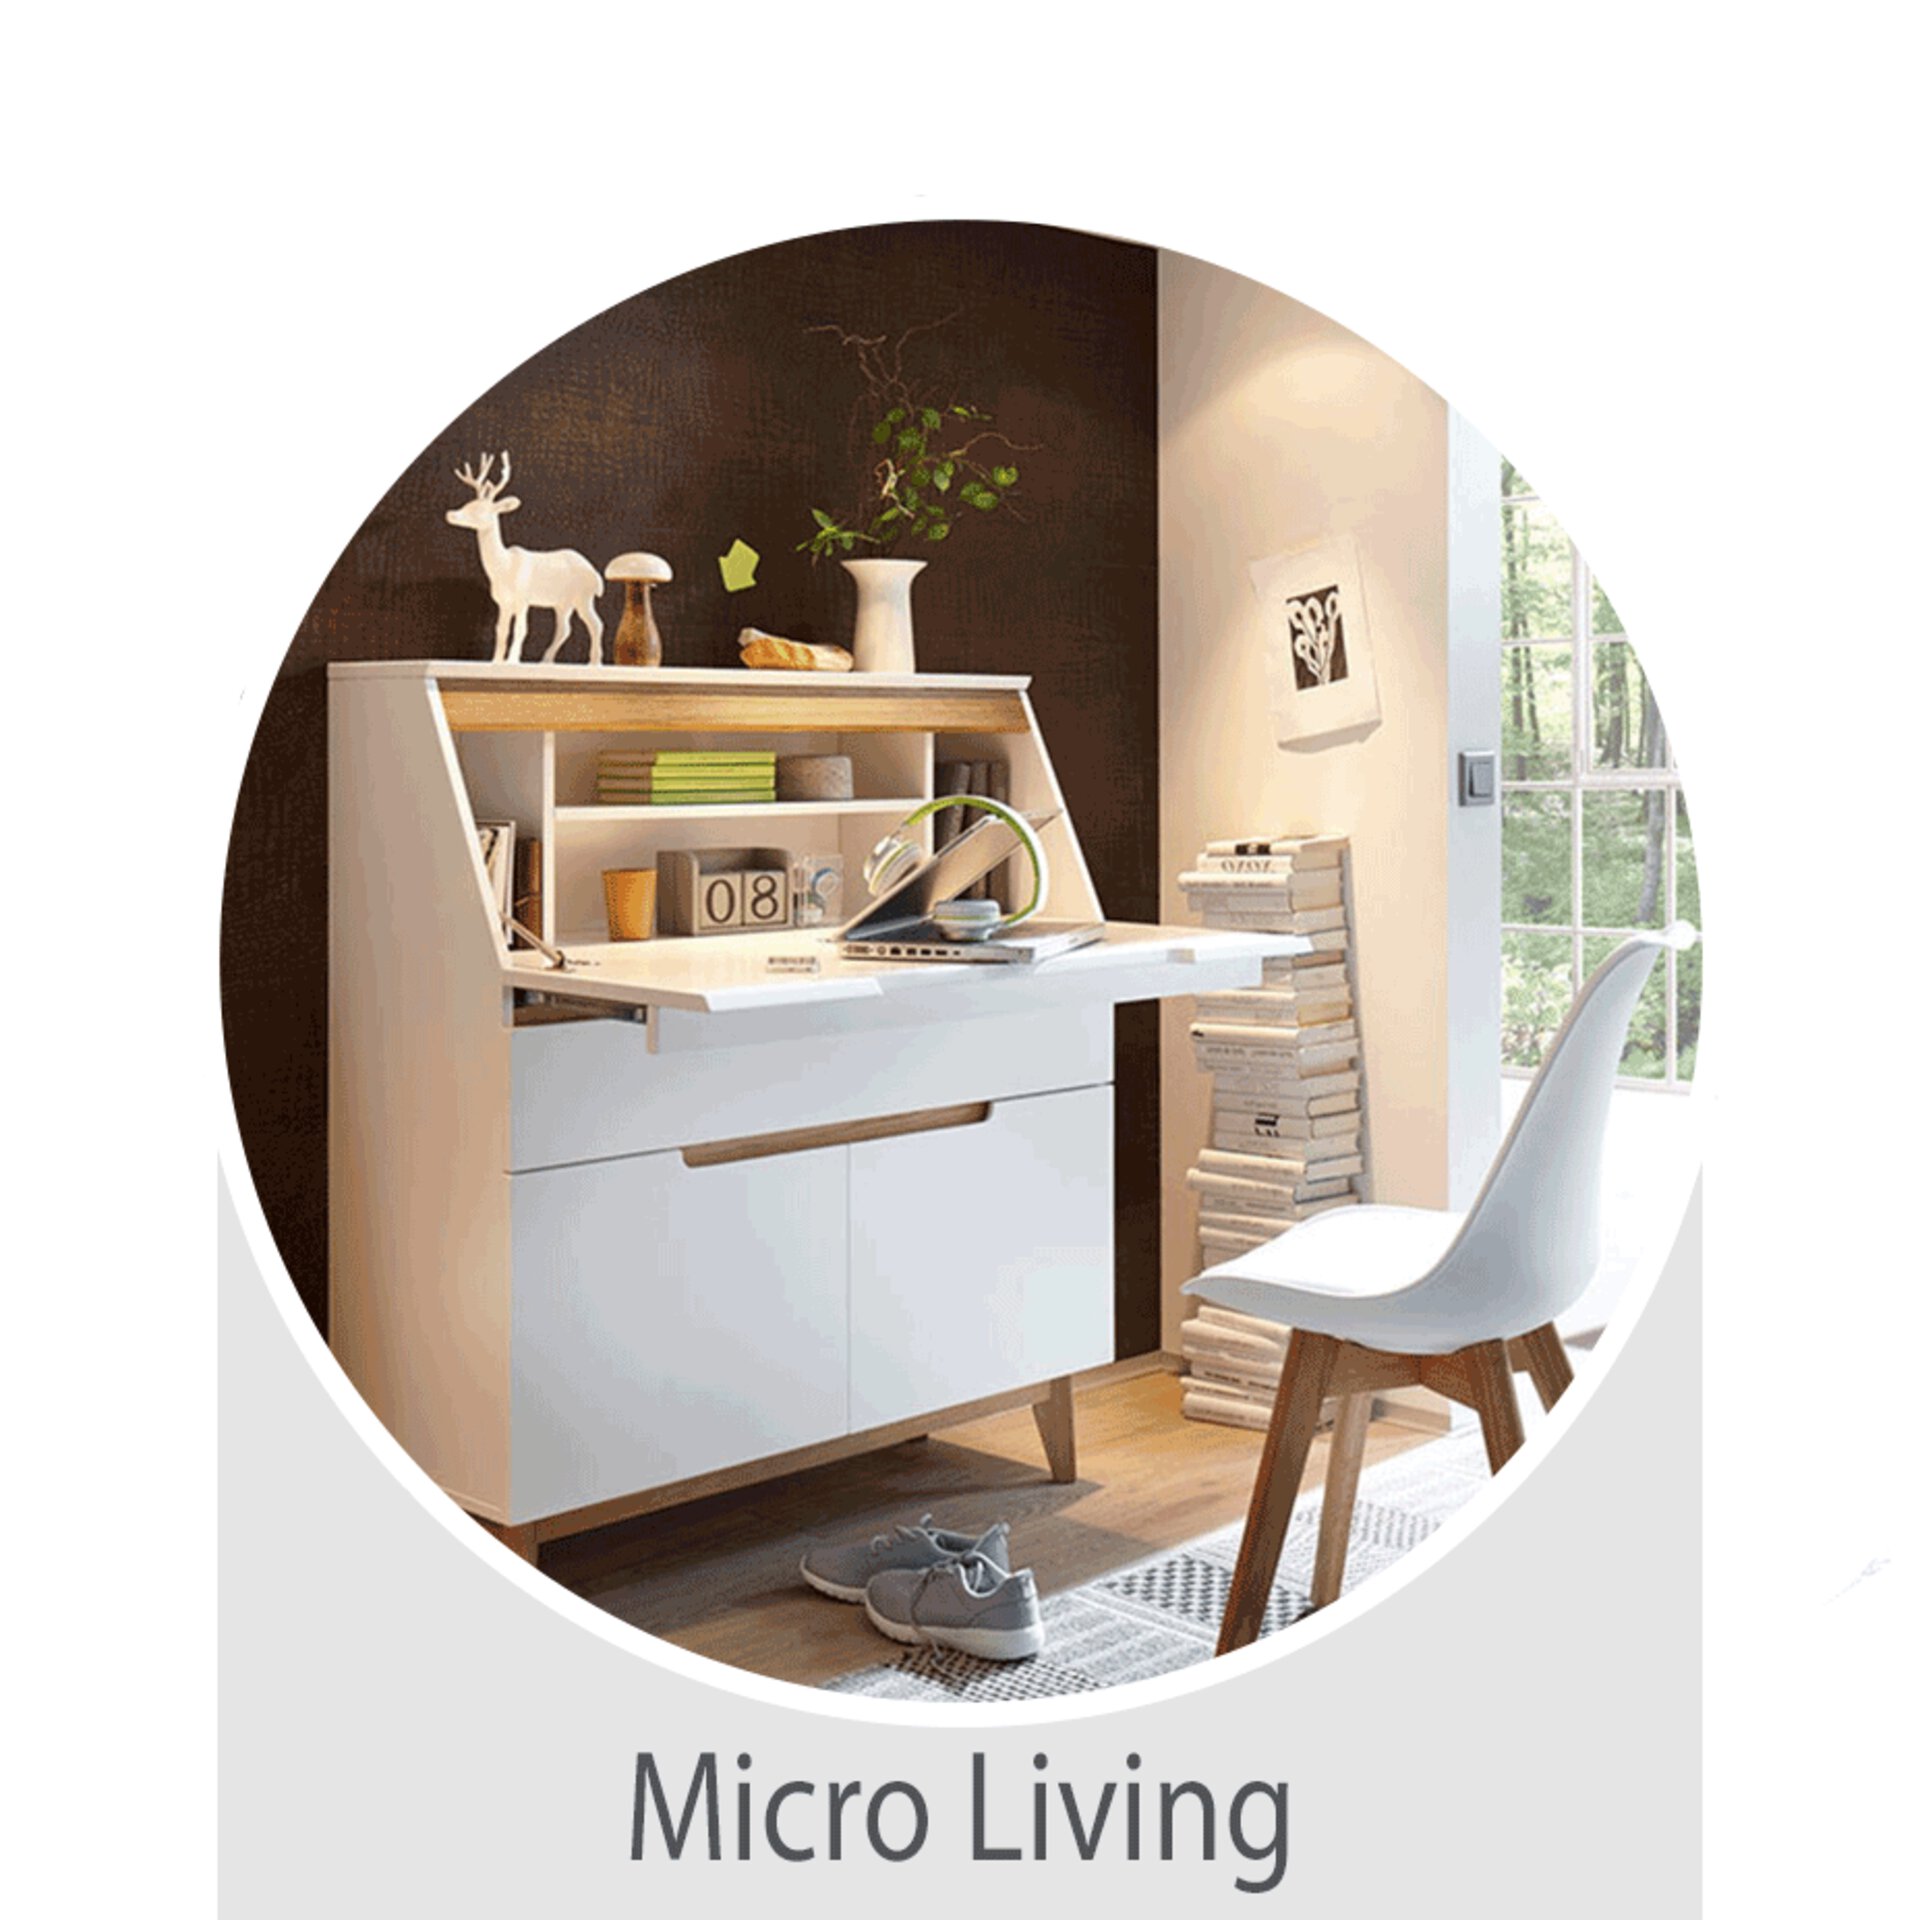 Der Wohntrend Micro Living -  jetzt bei Möbel Inhofer entdecken und inspirieren lassen